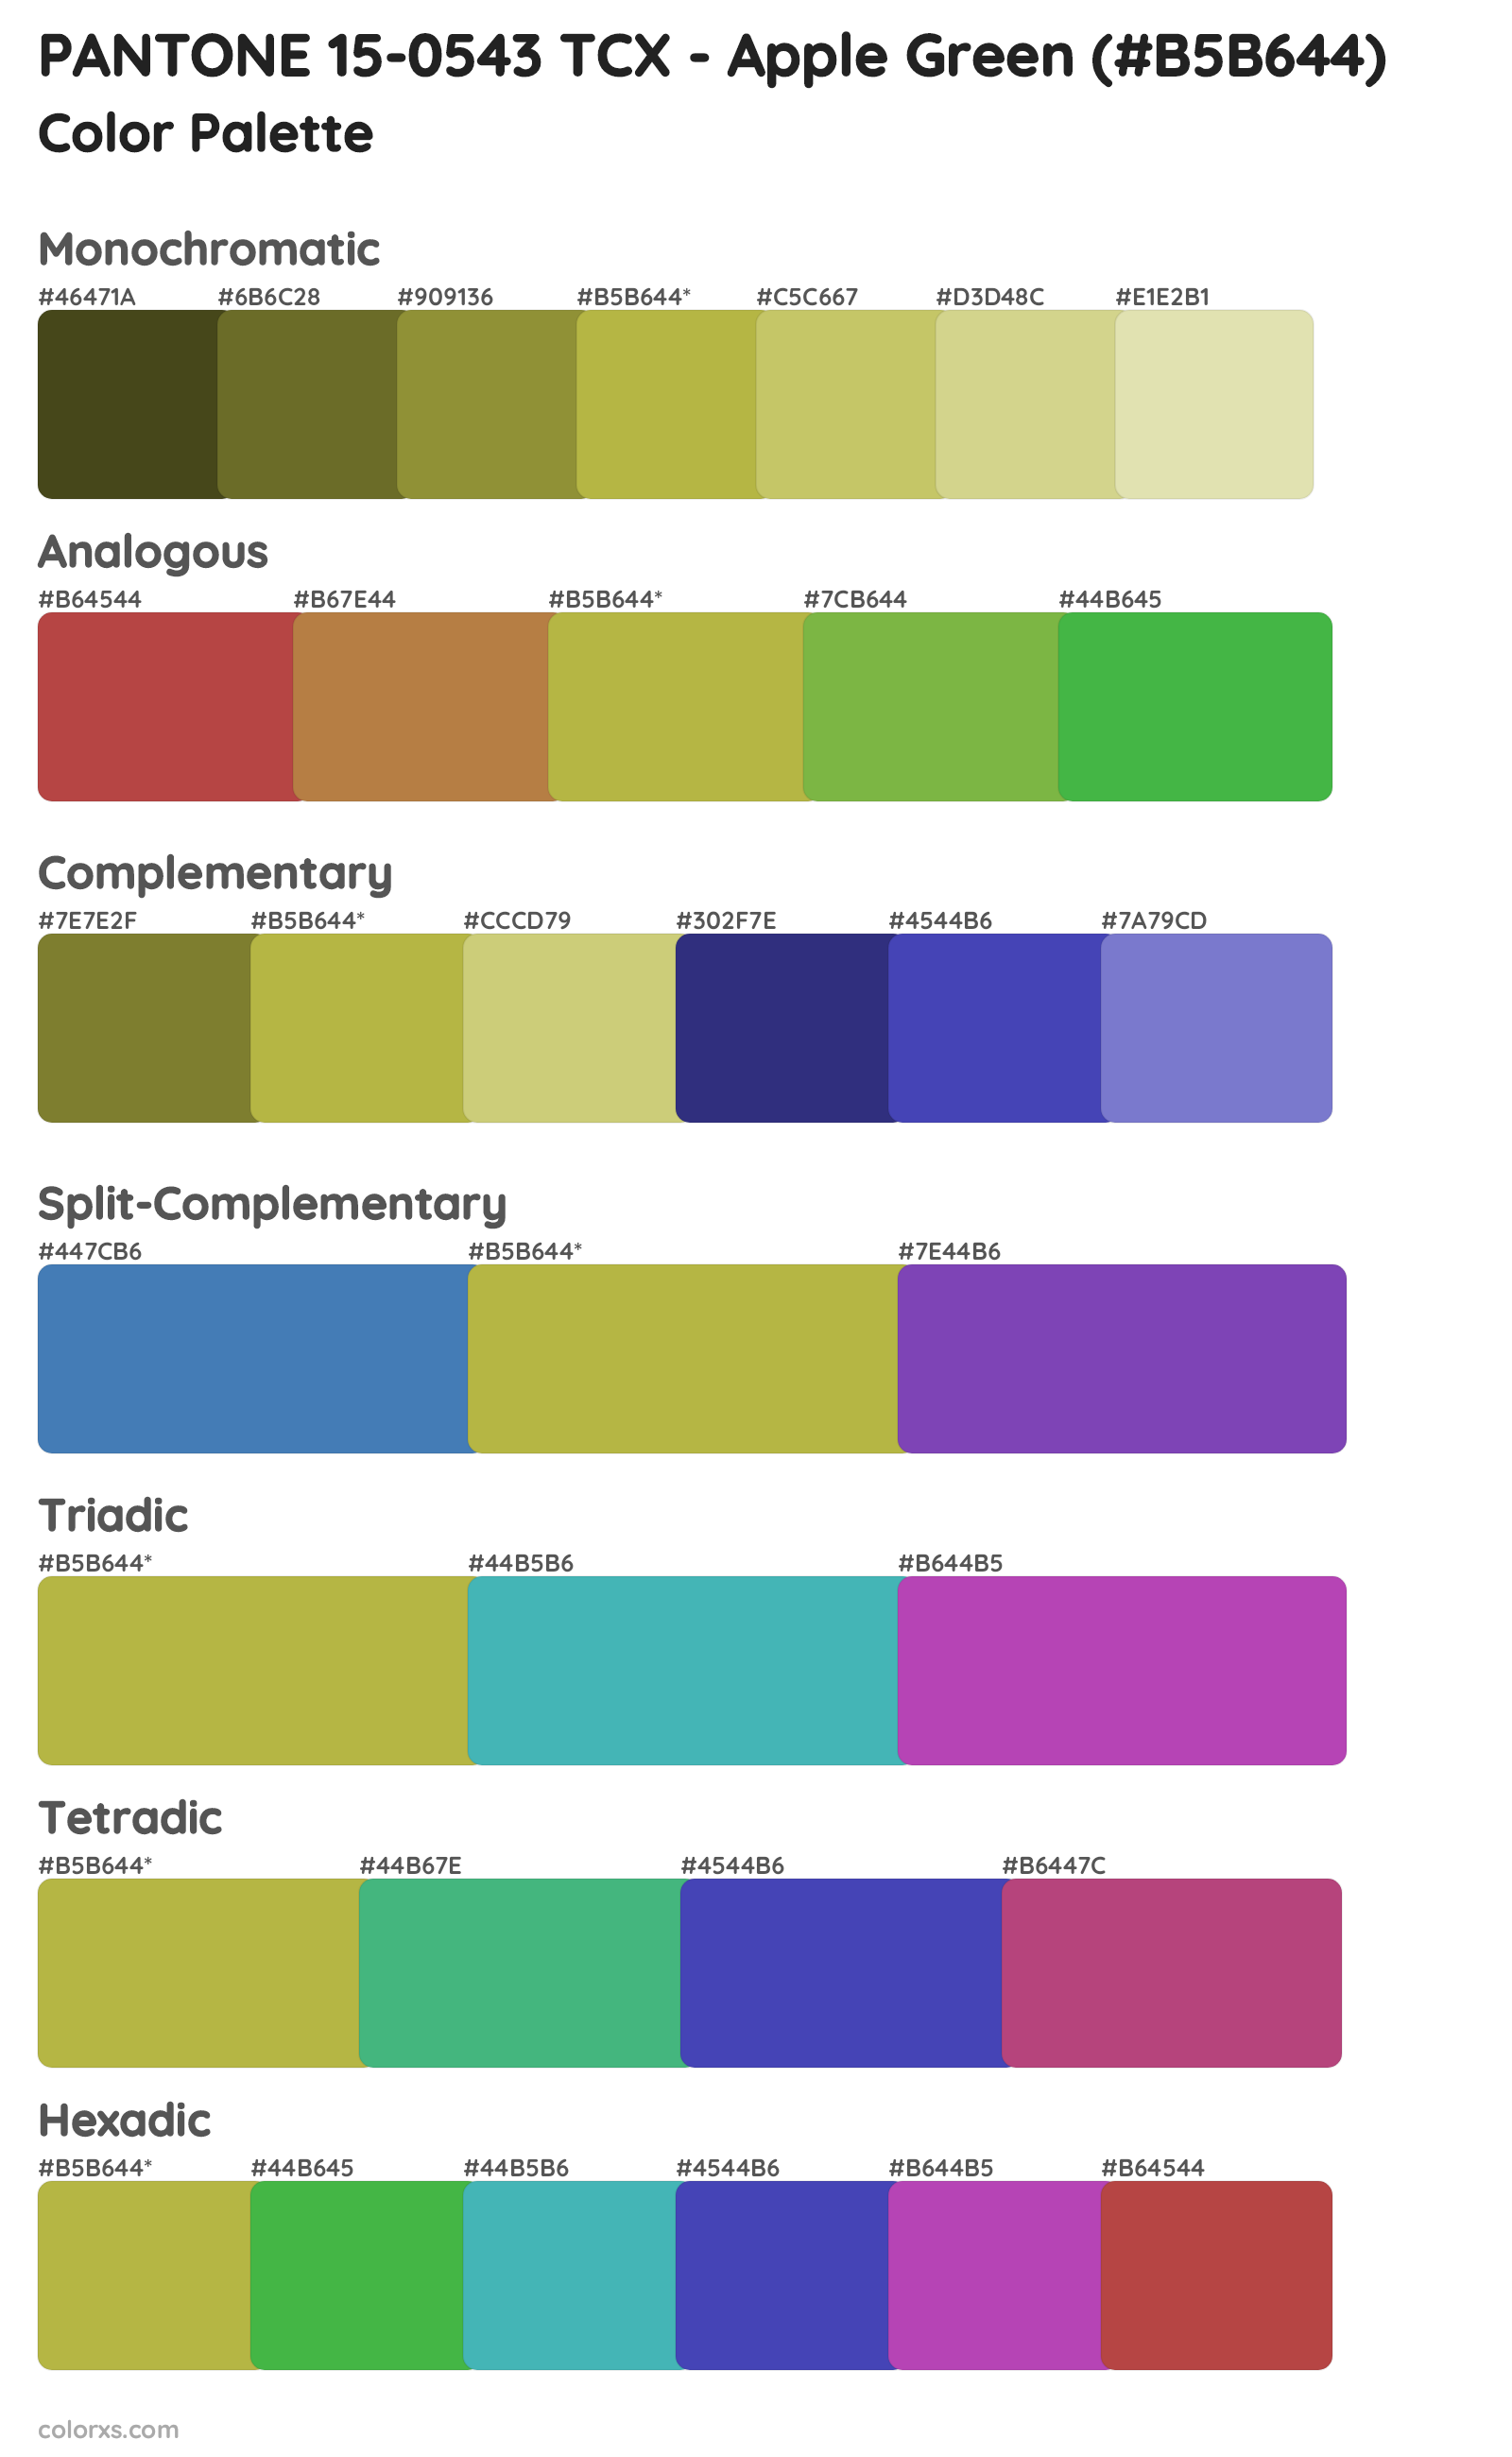 PANTONE 15-0543 TCX - Apple Green Color Scheme Palettes